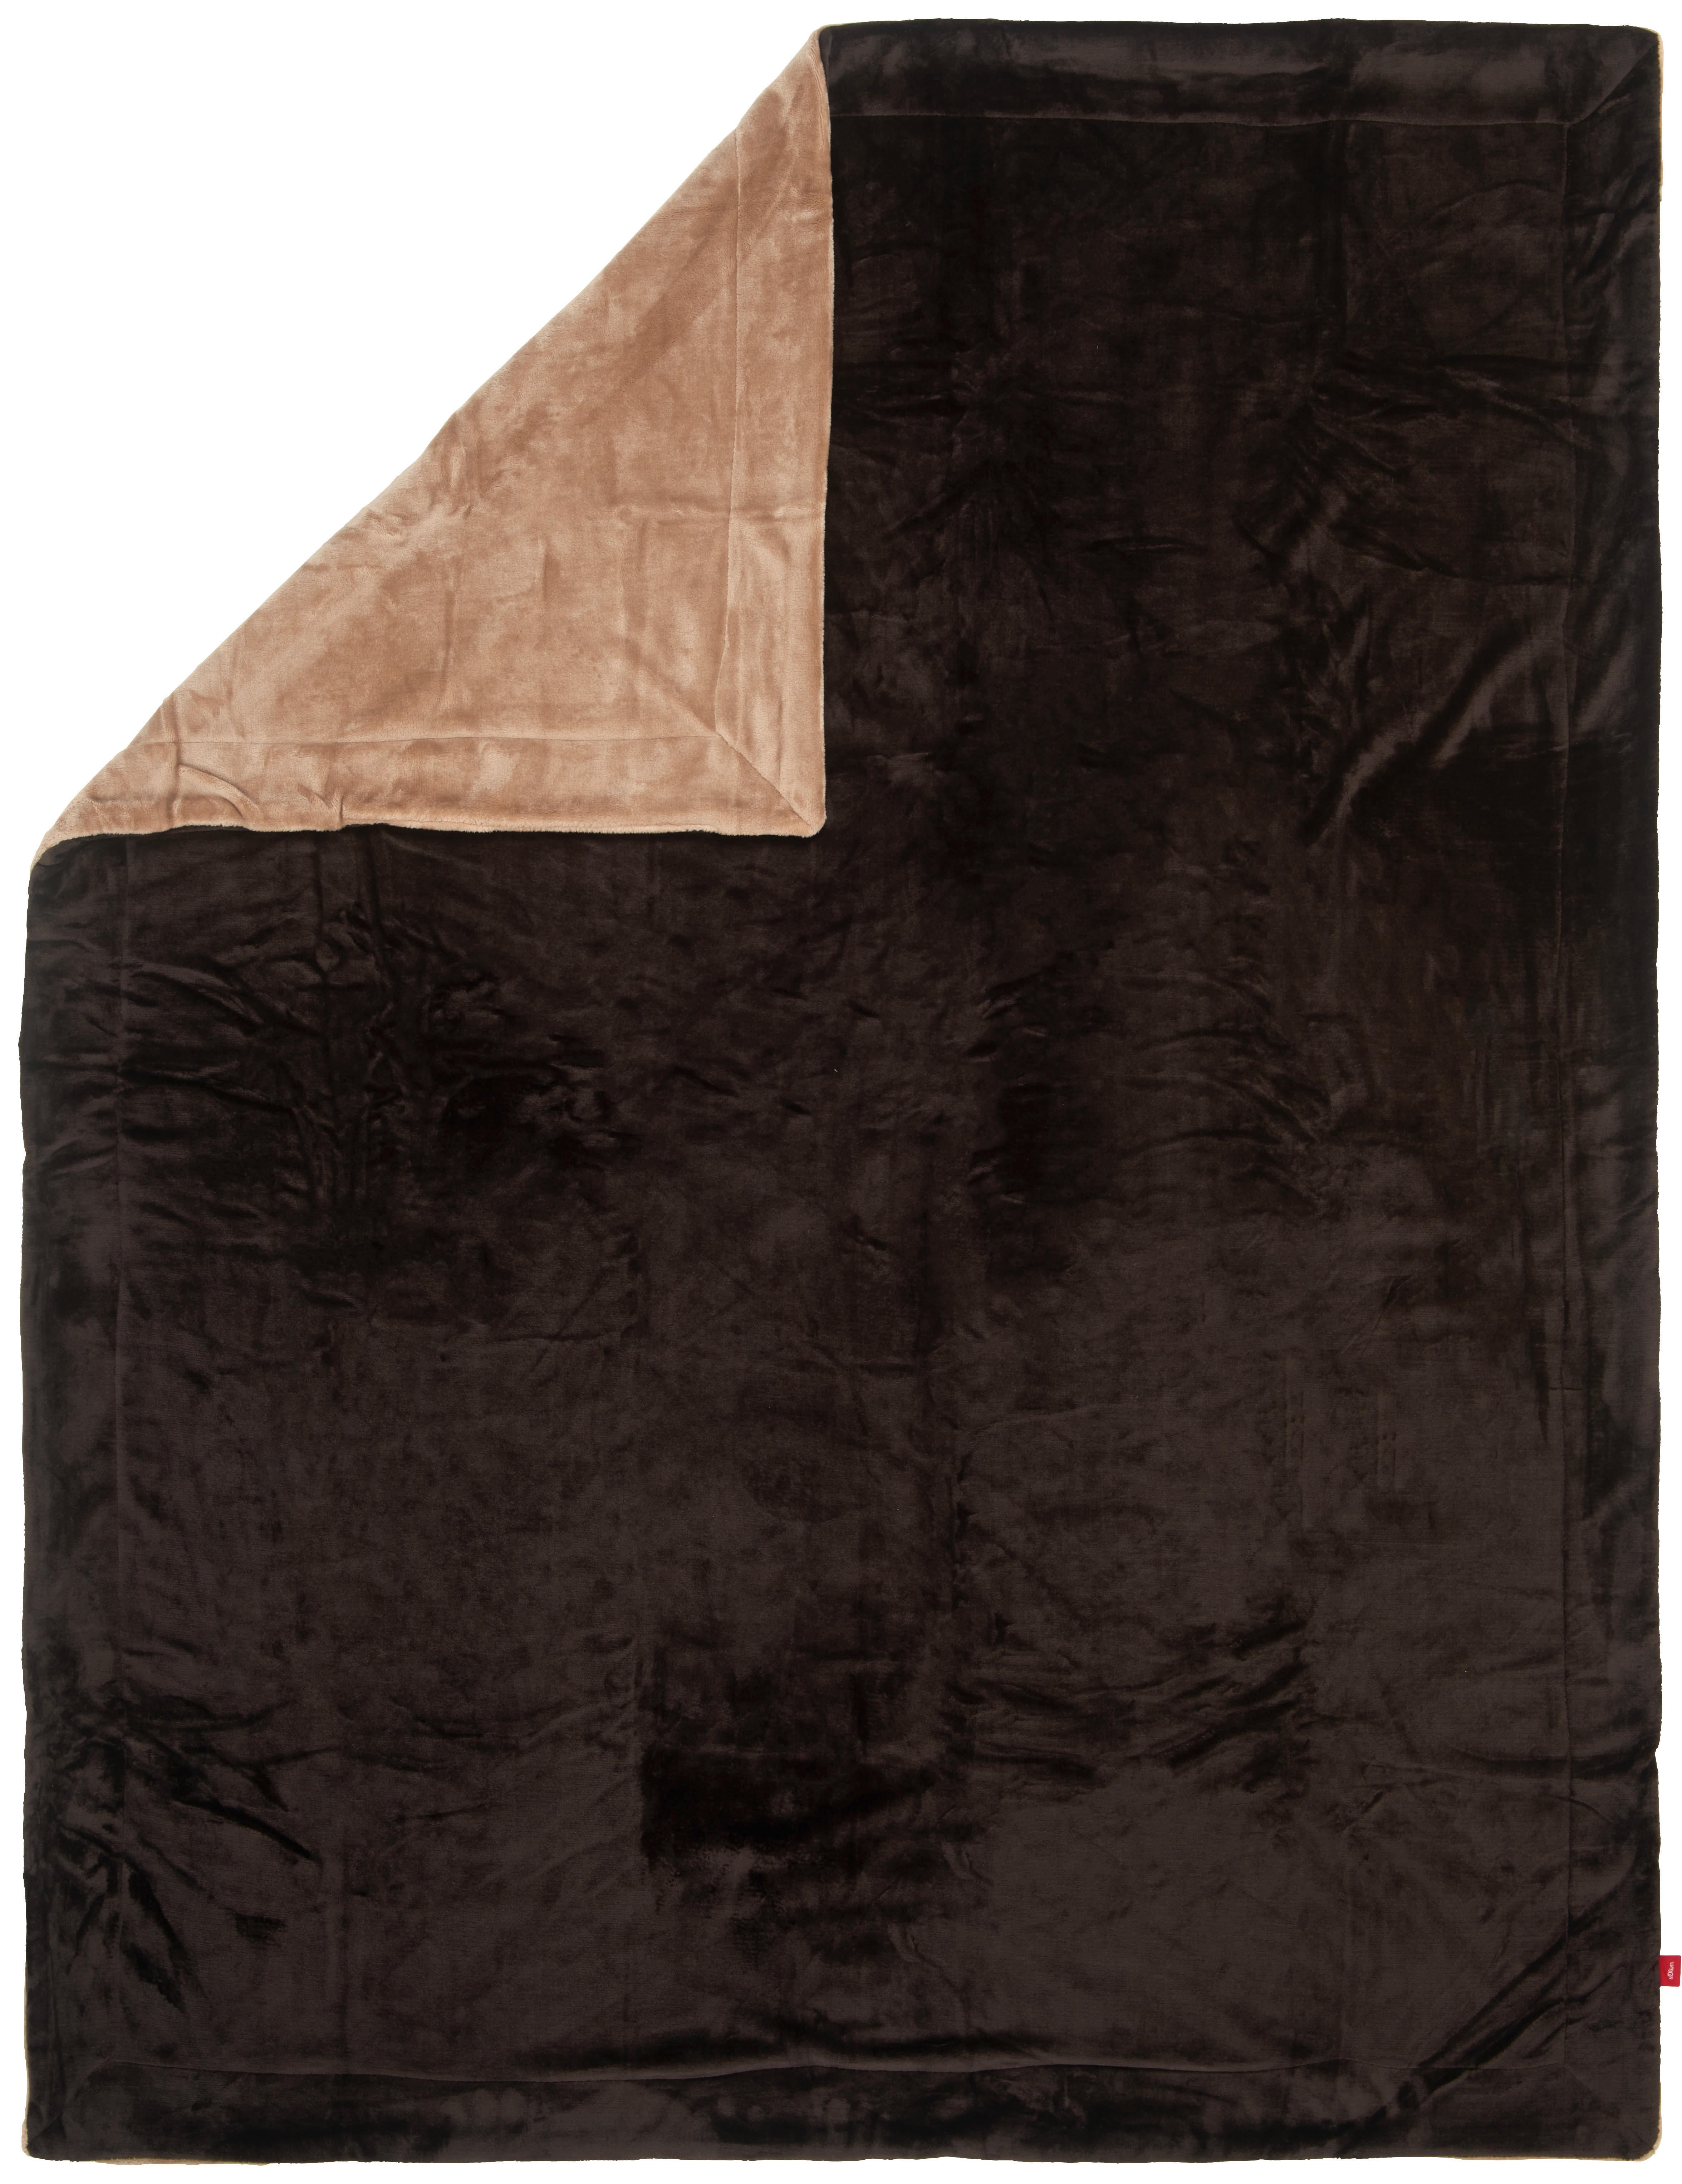 DECKE Double Soft 150/200 cm  - Beige/Braun, KONVENTIONELL, Textil (150/200cm) - S. Oliver